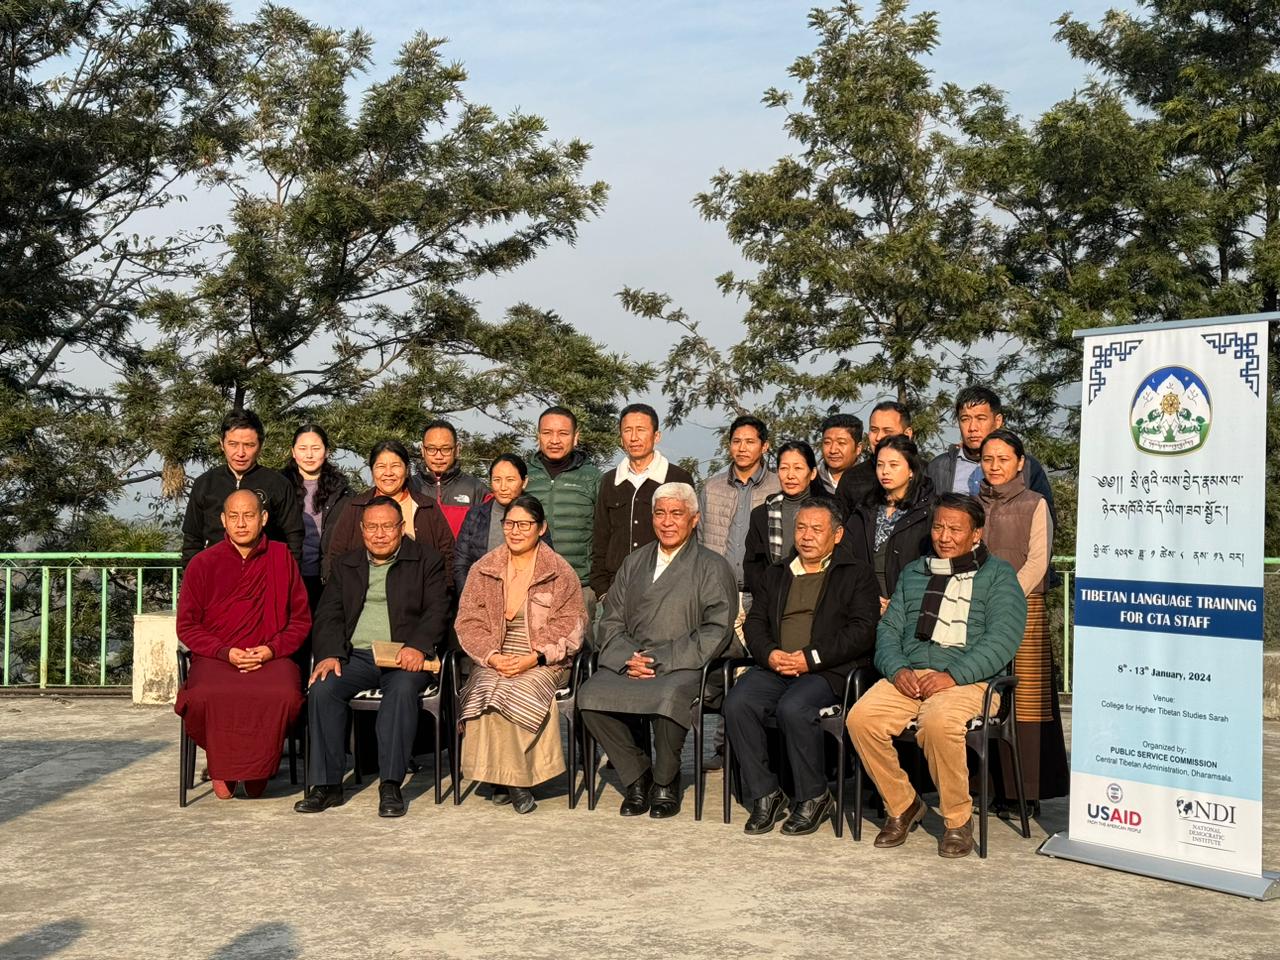 Public Service Commission Commences Tibetan Language Training for CTA Staff